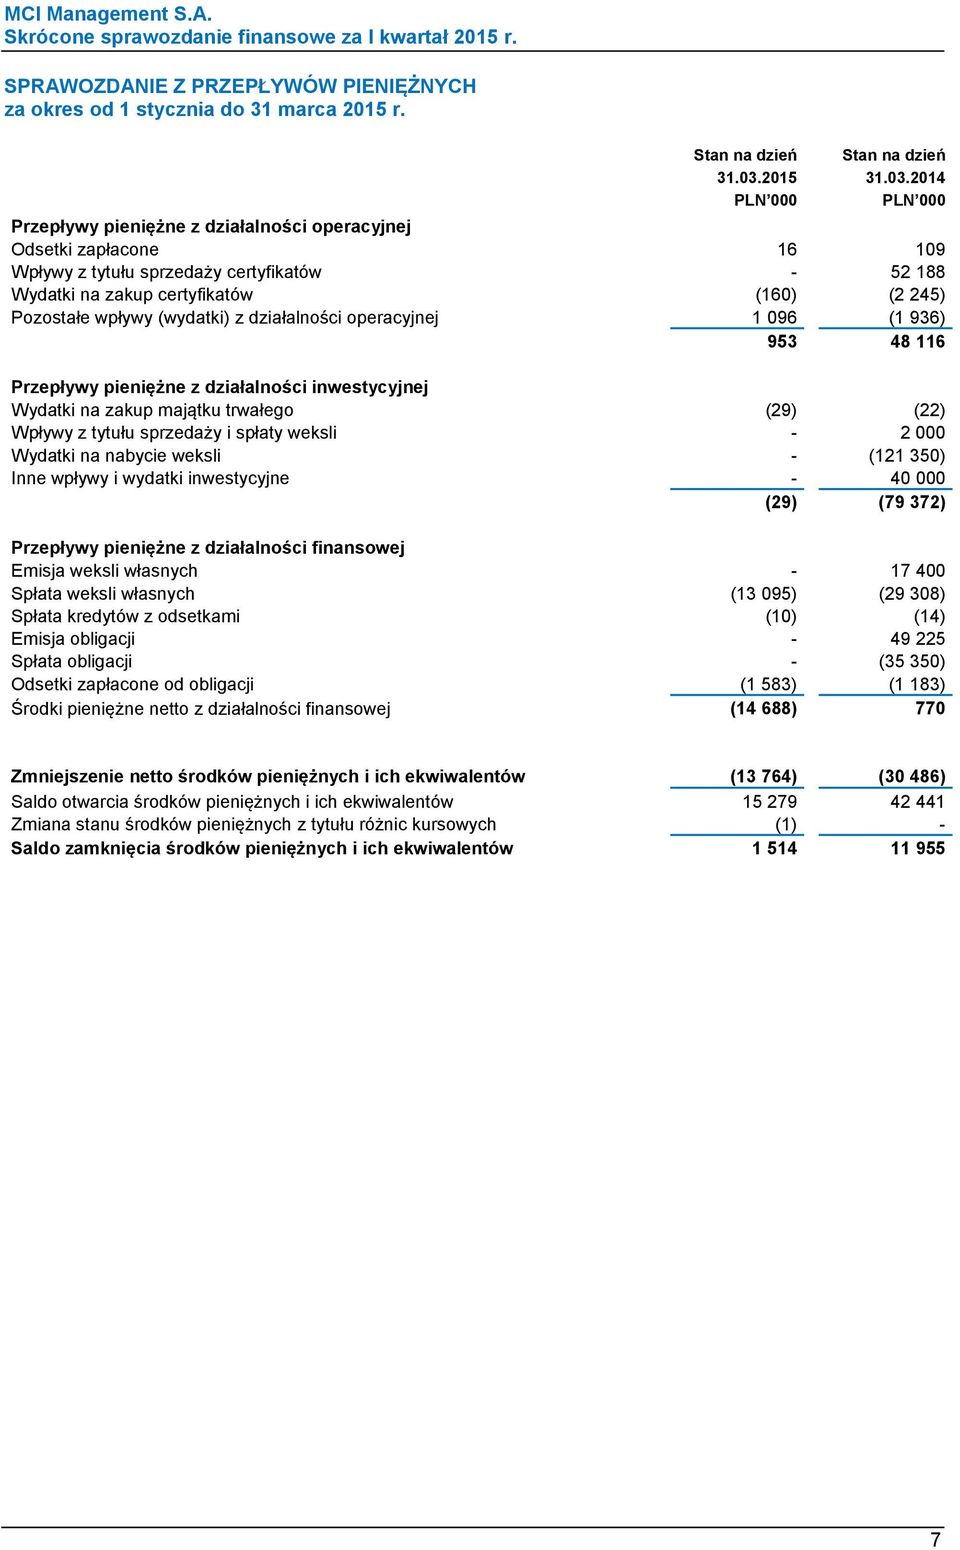 2014 PLN 000 PLN 000 Przepływy pieniężne z działalności operacyjnej Odsetki zapłacone 16 109 Wpływy z tytułu sprzedaży certyfikatów - 52 188 Wydatki na zakup certyfikatów (160) (2 245) Pozostałe